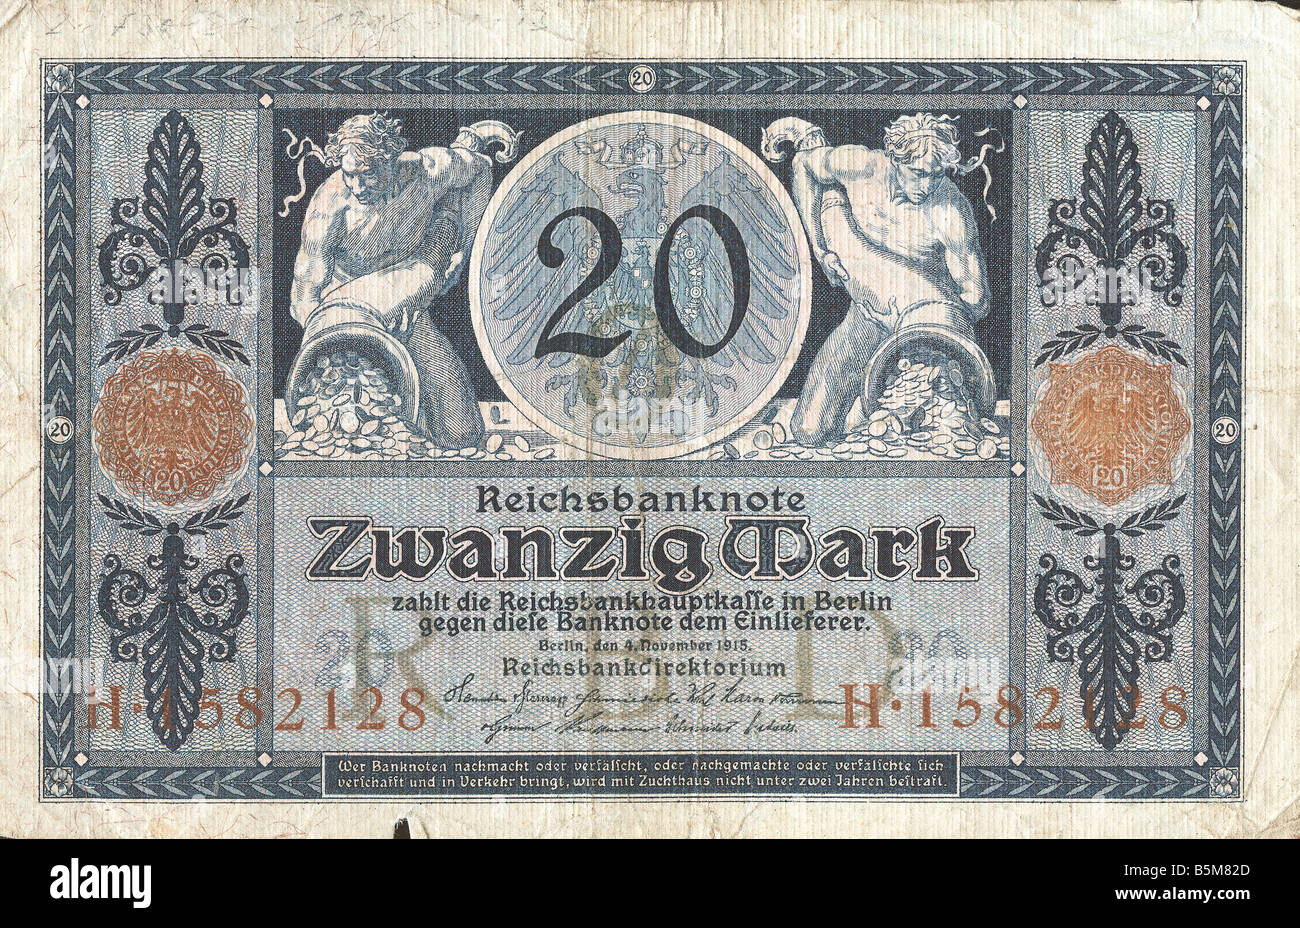 2 F30 D1 1915 1 20 Mark 1915 Finanzen Banknoten Deutsche Reich Banknoten aus der Zeit des 1. Weltkrieges 1914-18 20 Mark Stockfoto